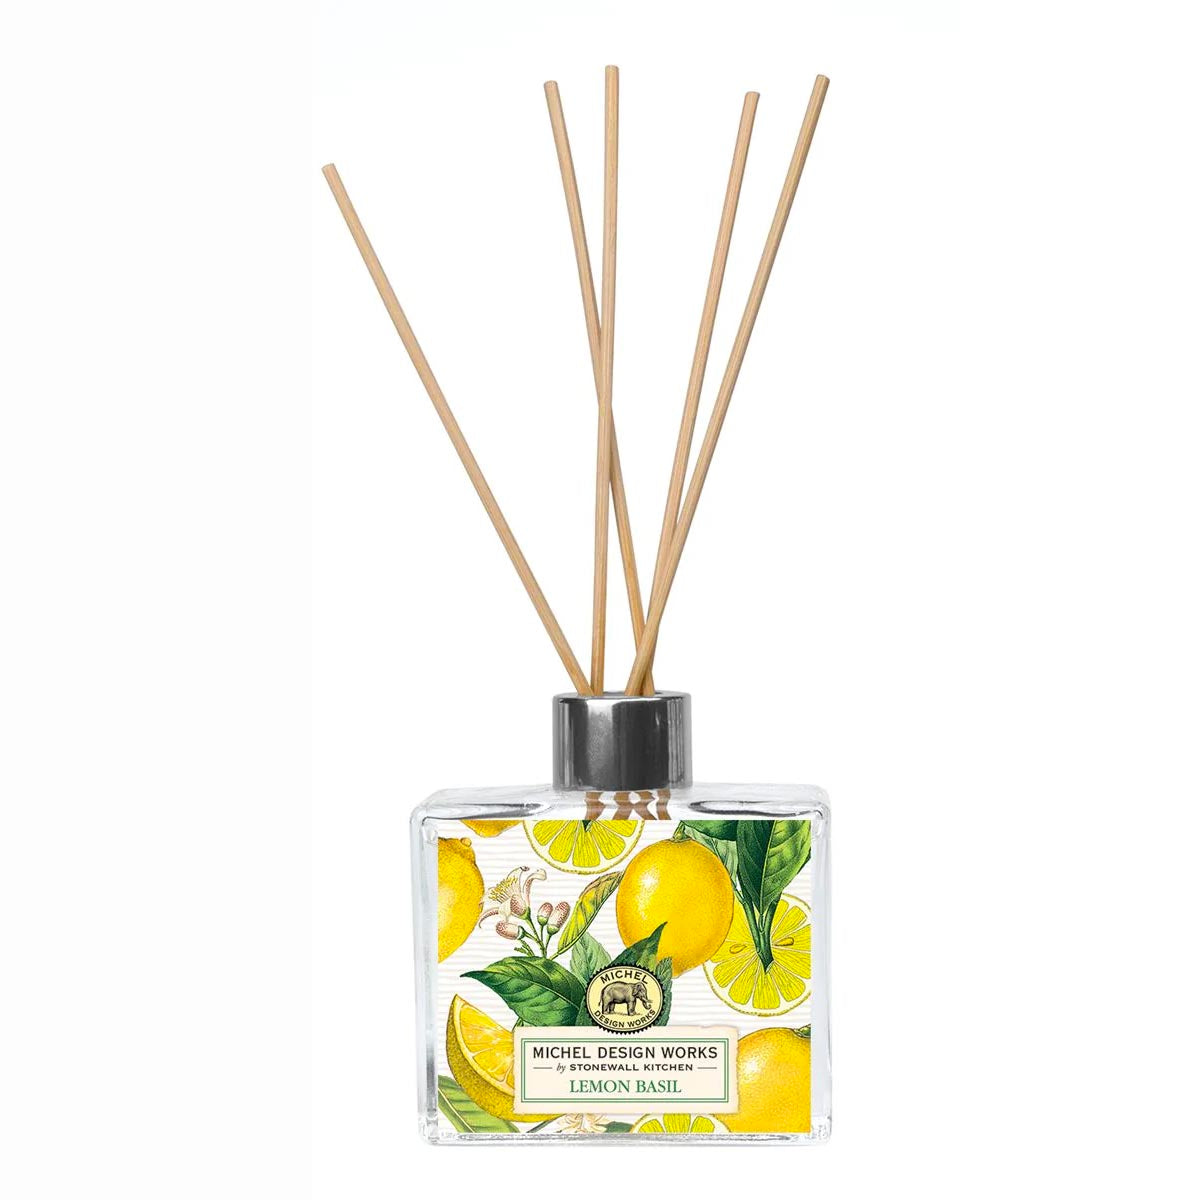 Michel Design Works - Lemon Basil Home Fragrance Reed Diffuser *TESTER*